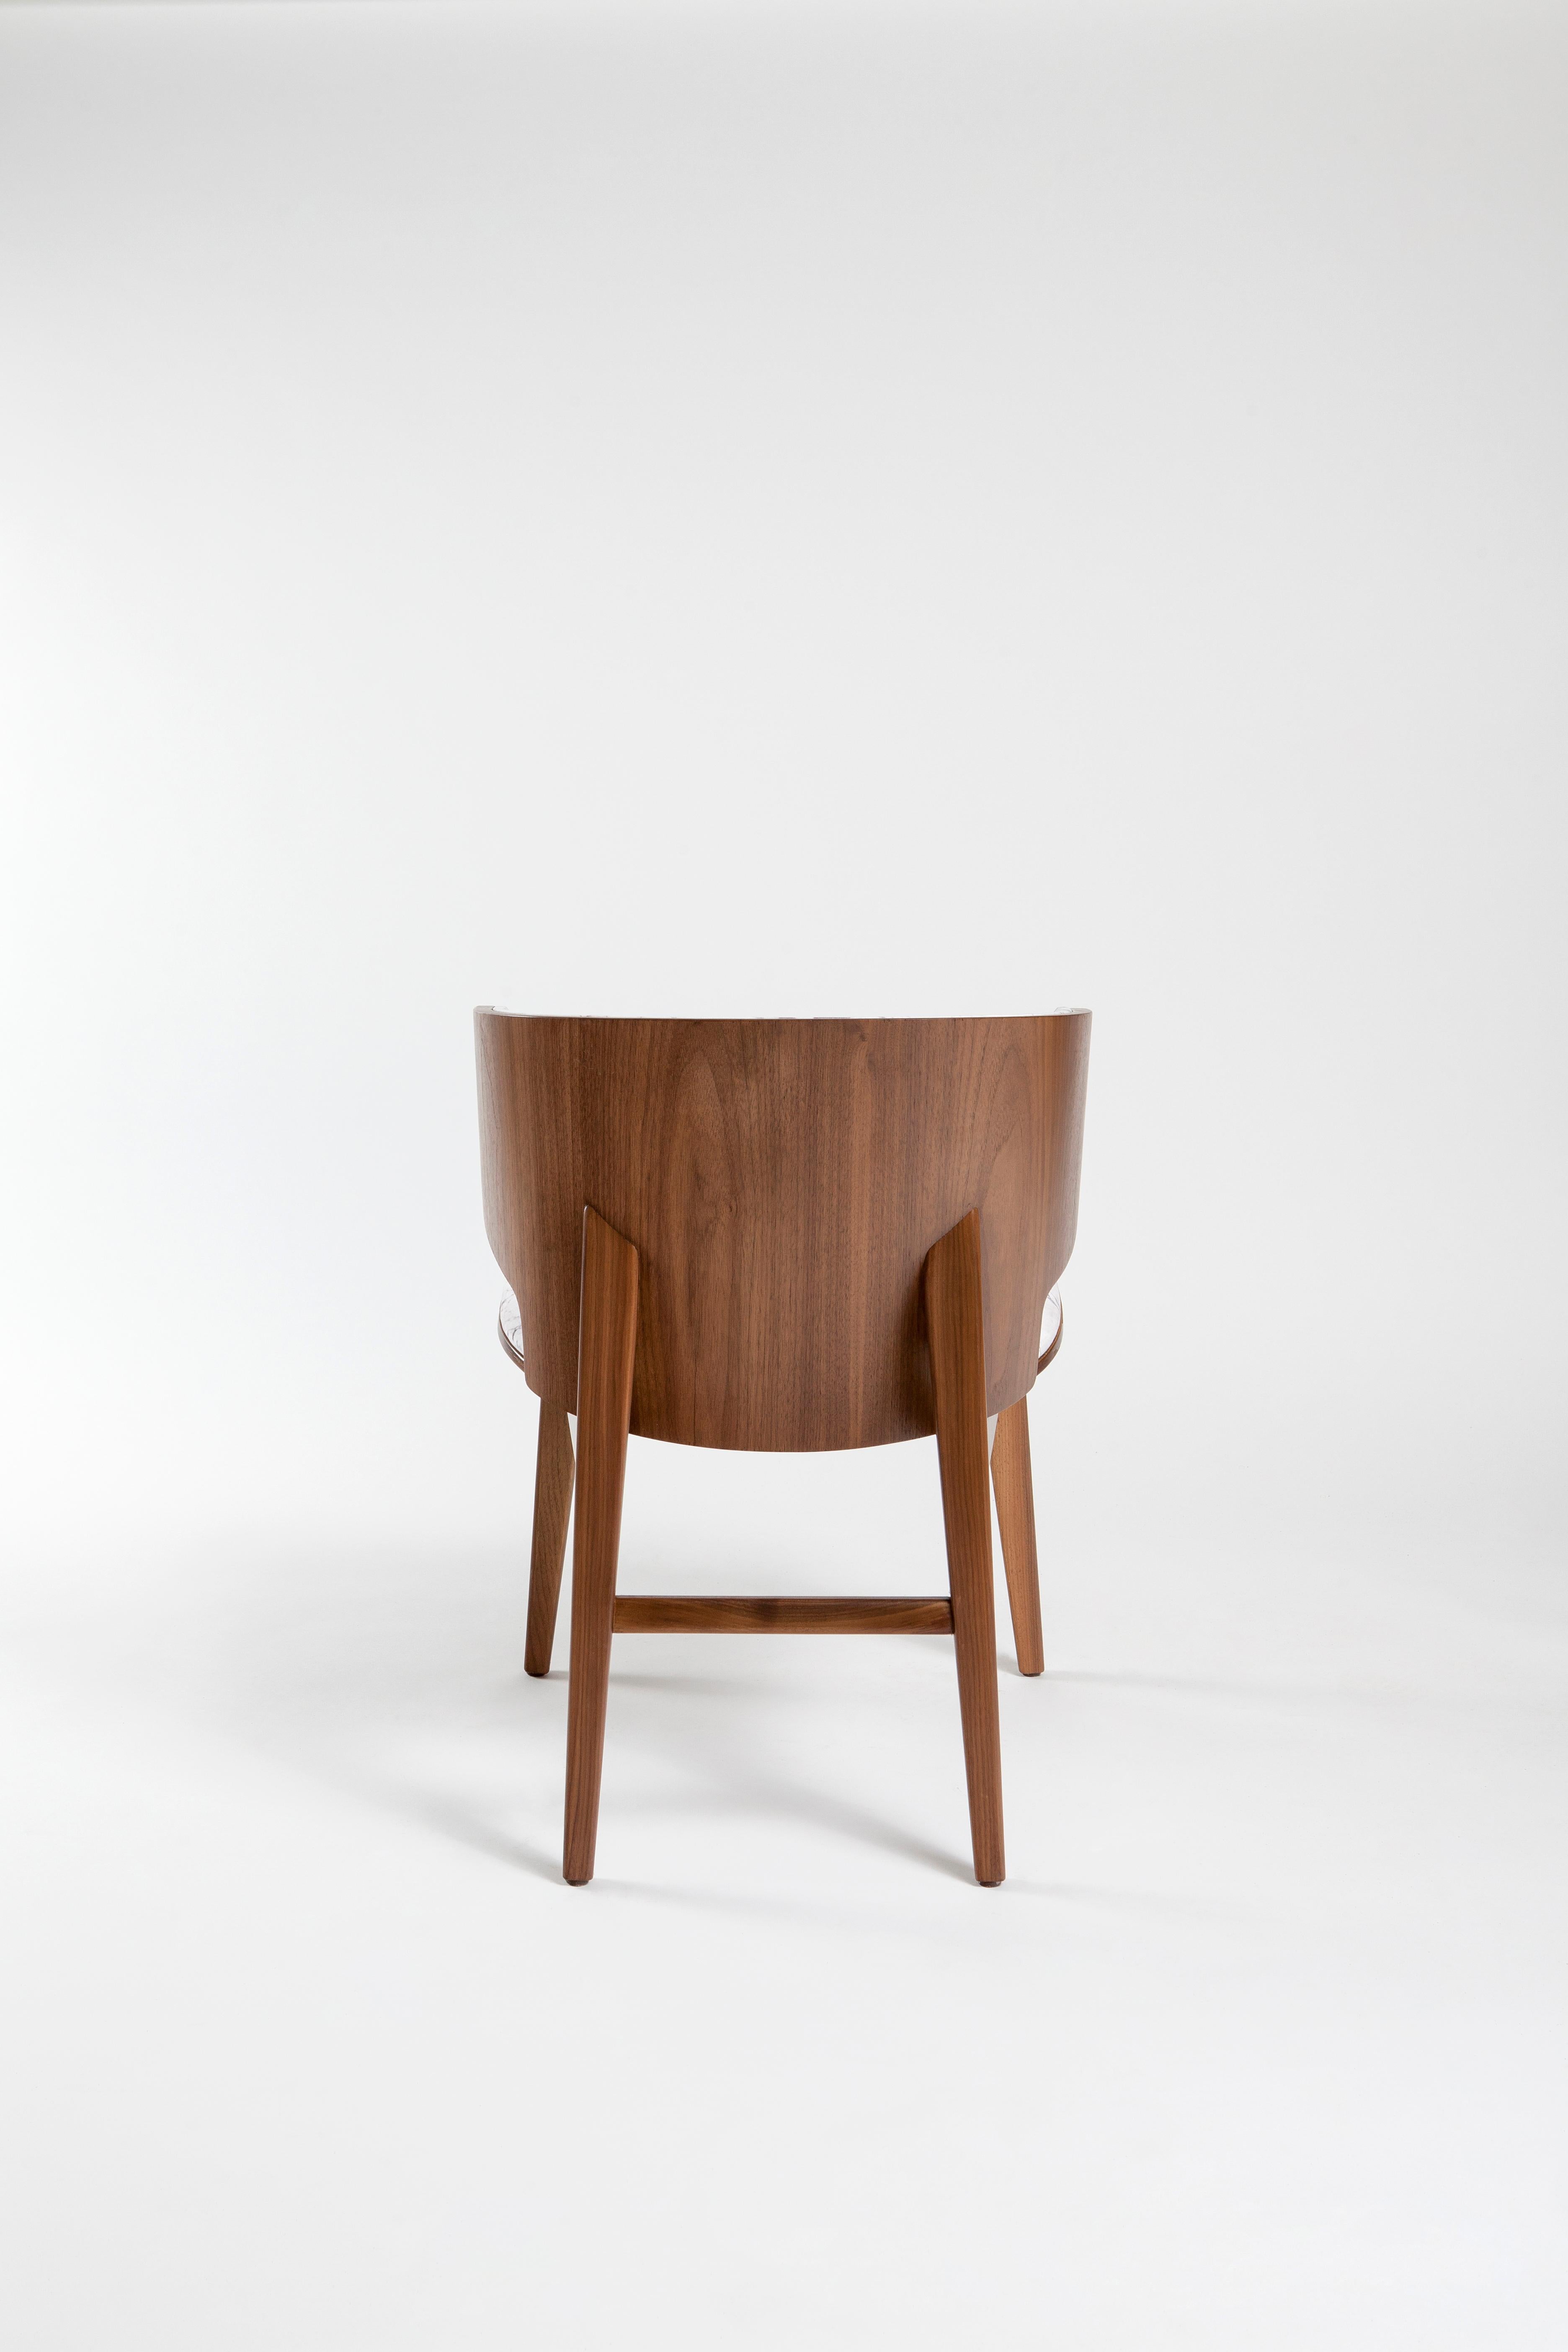 Sarr ist ein gemütlicher Sessel, der mit seinem Korpus aus massivem Walnuss-/Eichenholz und seiner Kaschmir-/Lederpolsterung ein Maximum an Komfort bietet.
Esszimmerstuhl, Bürostuhl